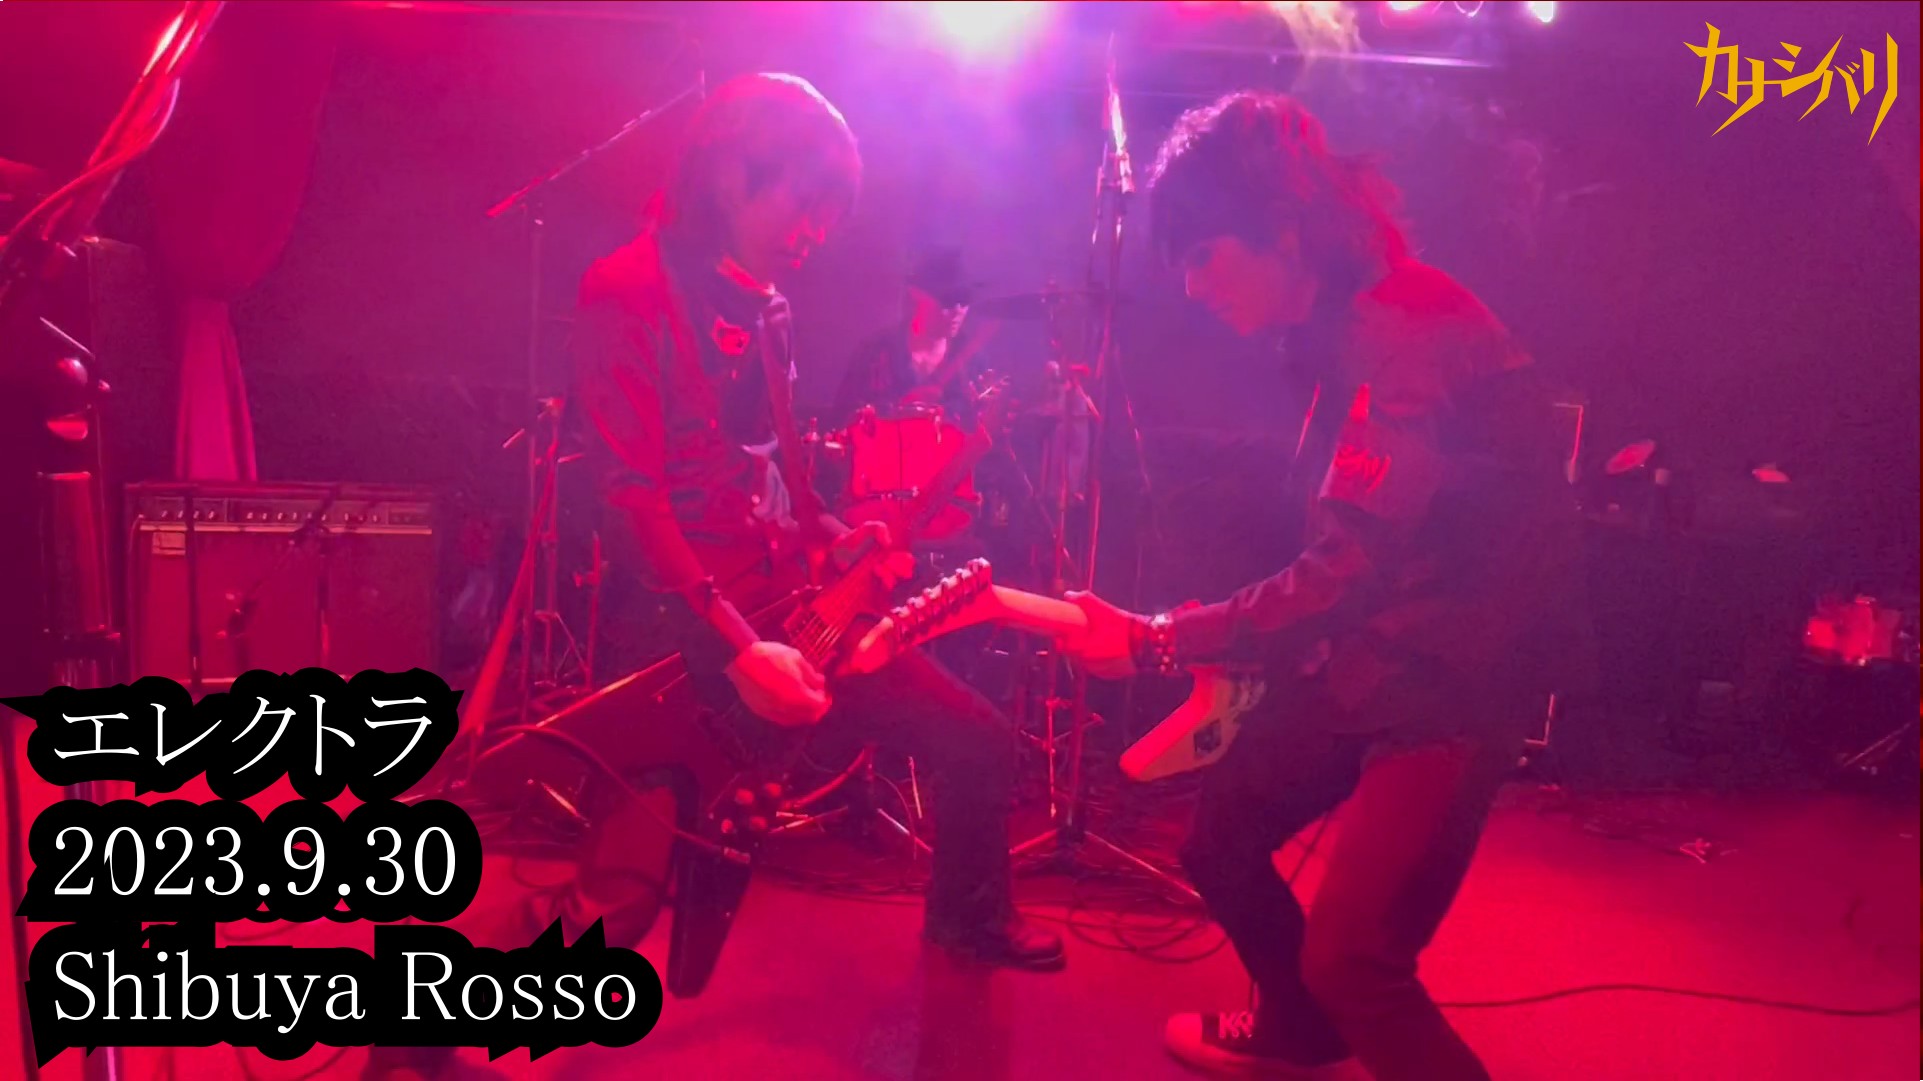 エレクトラ - Live at Shibuya Rosso / 2023.9.30